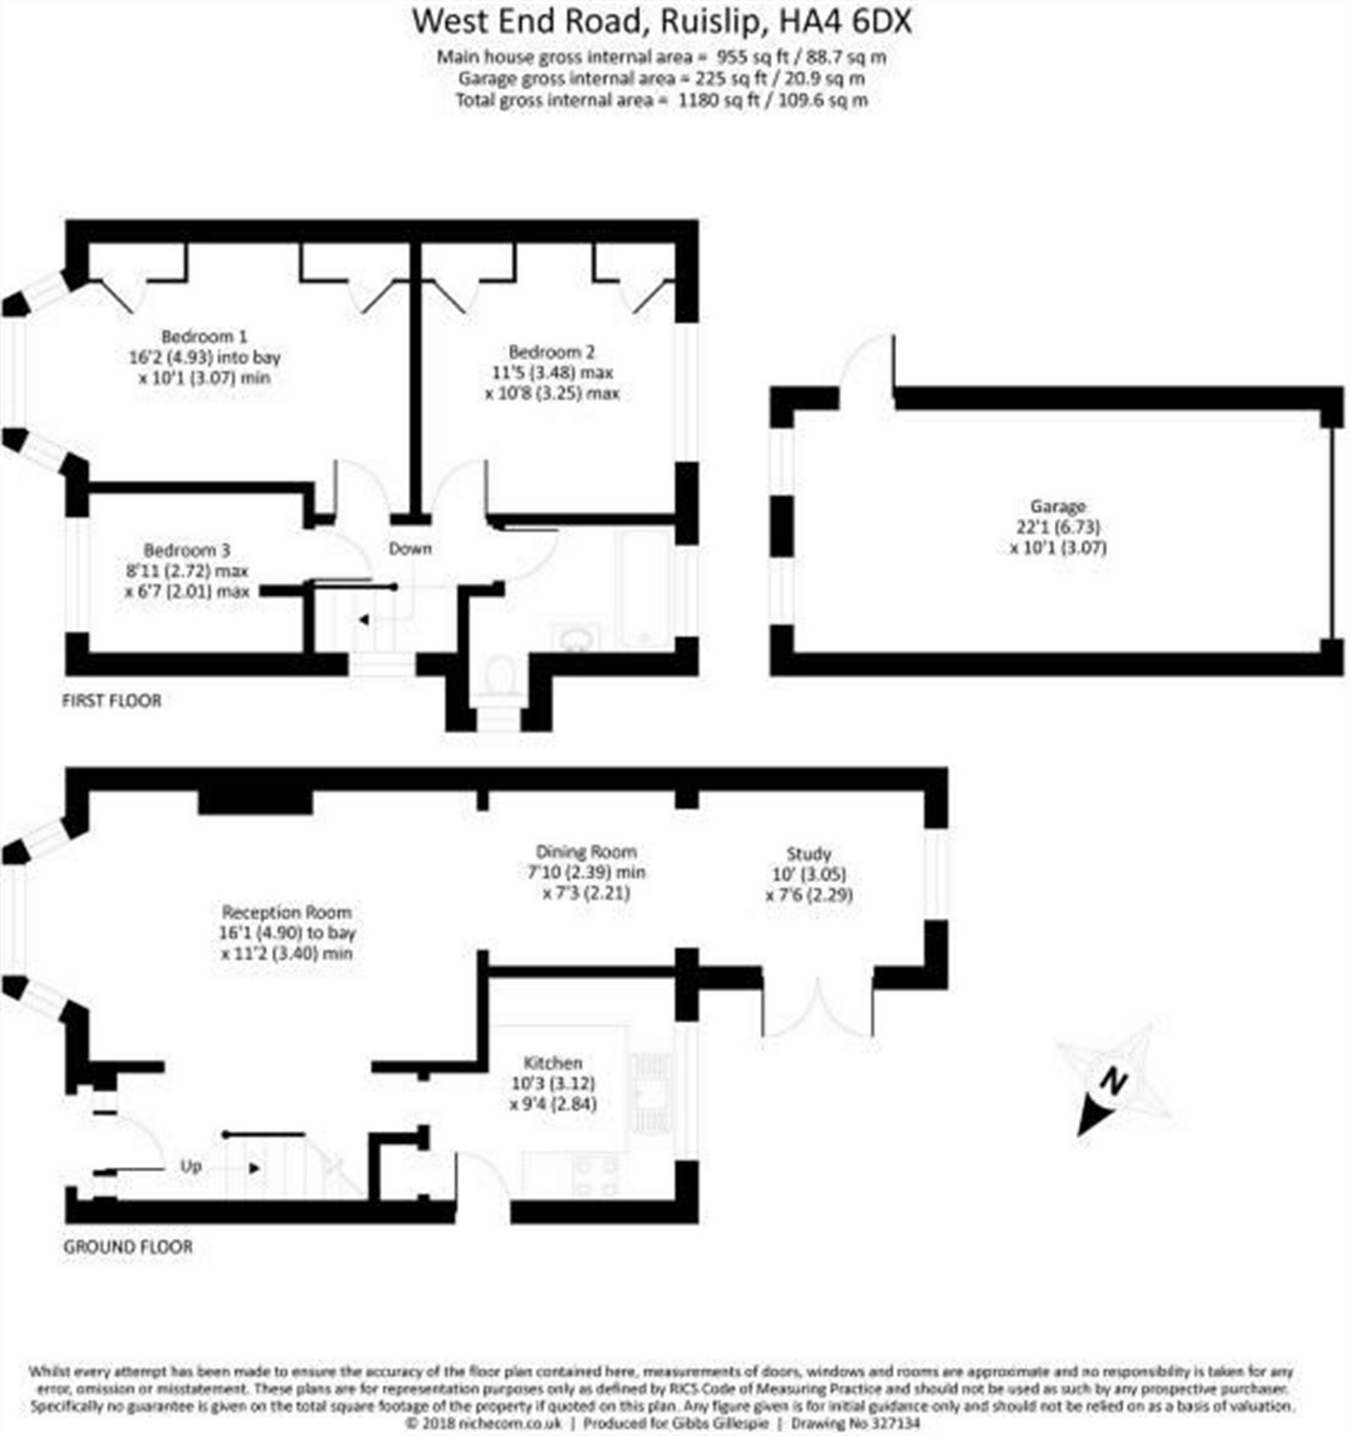 3 Bedrooms Semi-detached house to rent in West End Road, Ruislip Gardens, Ruislip HA4